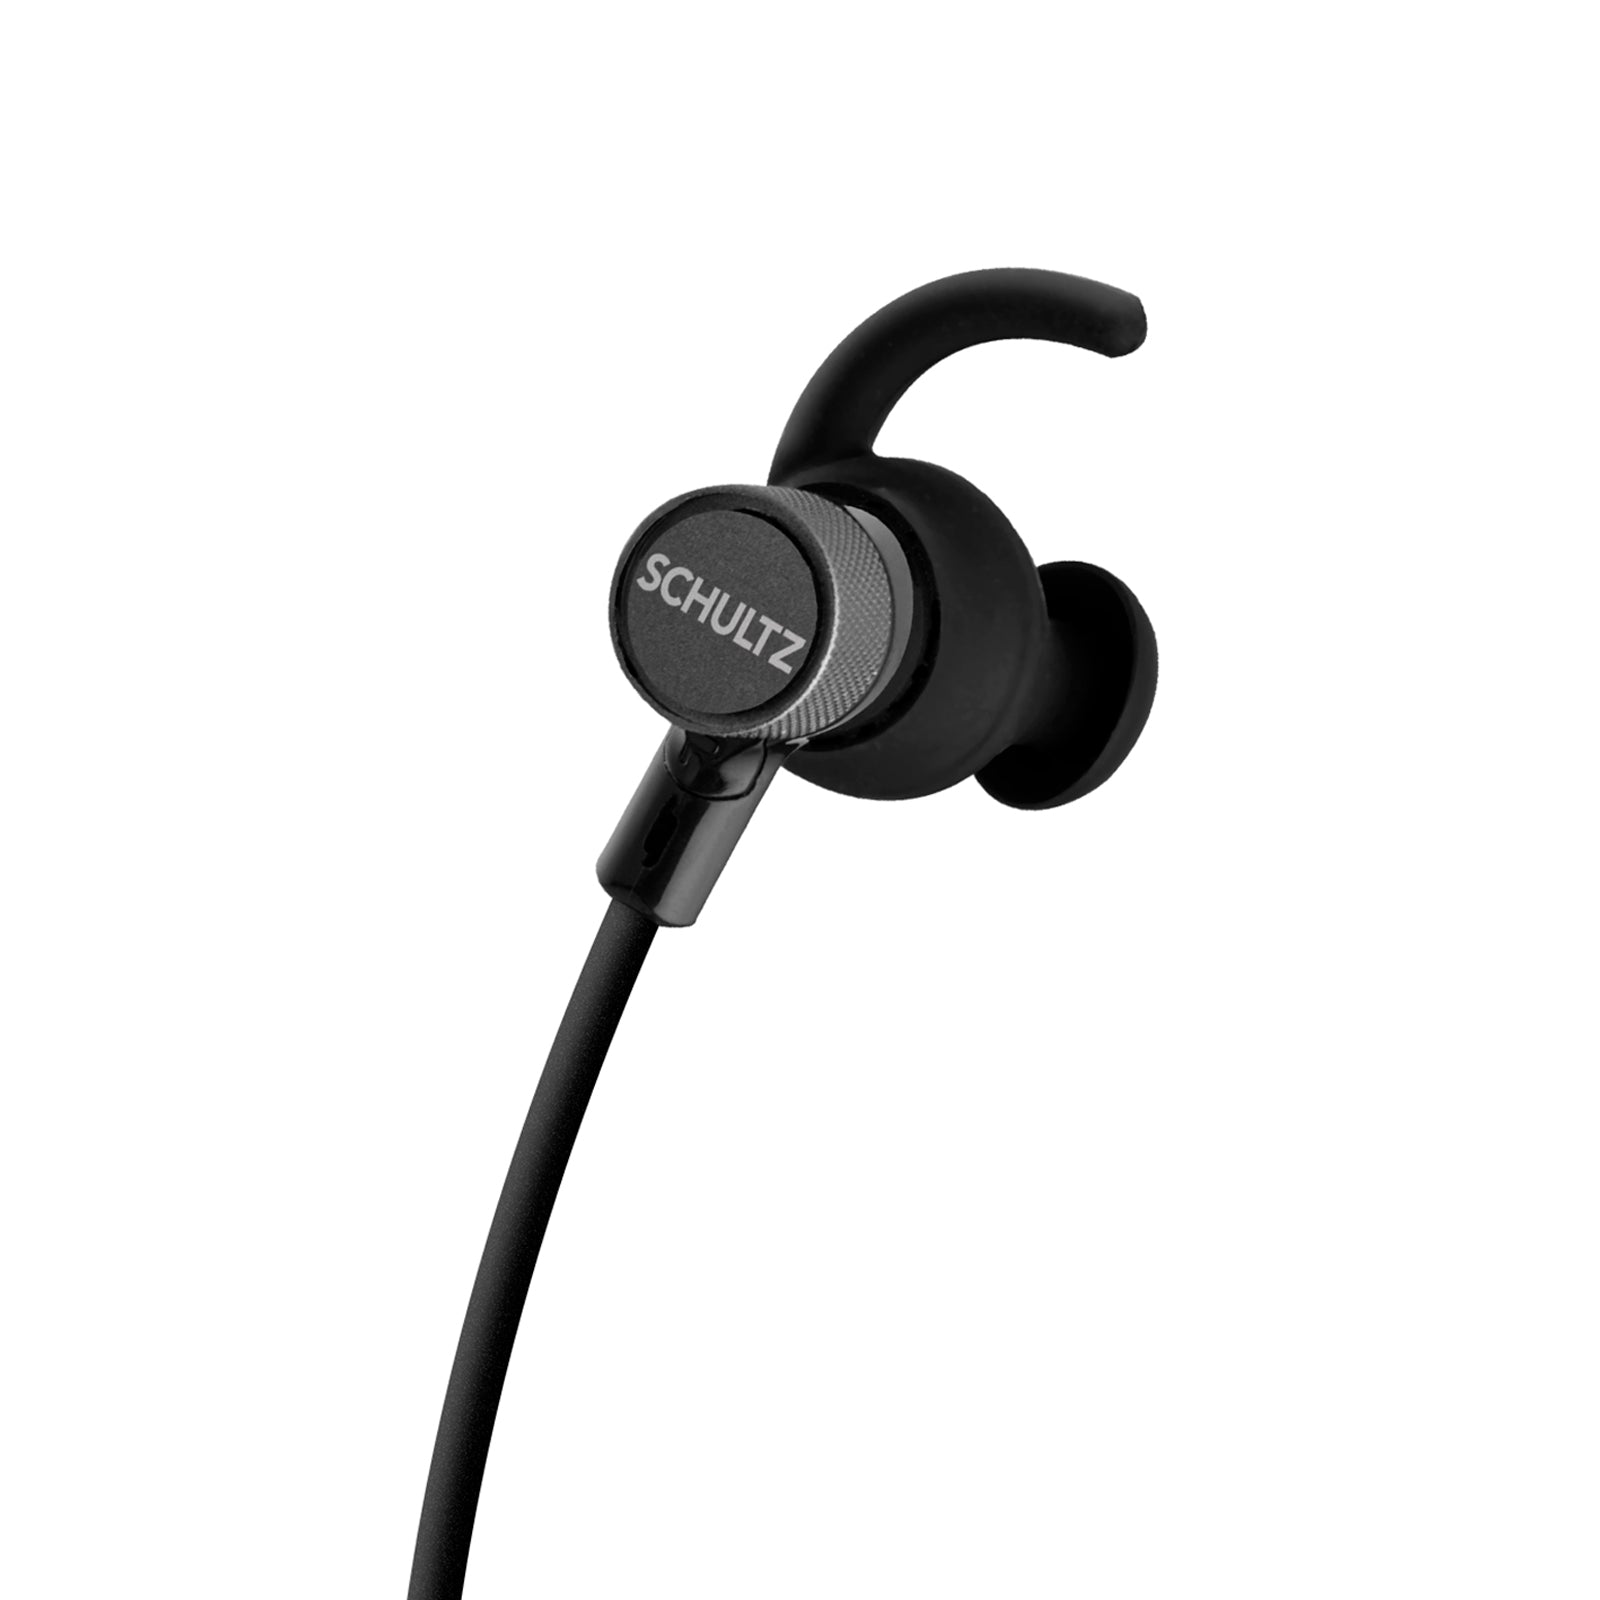 Schultz Q-Tech In-Ear Wireless Earphones